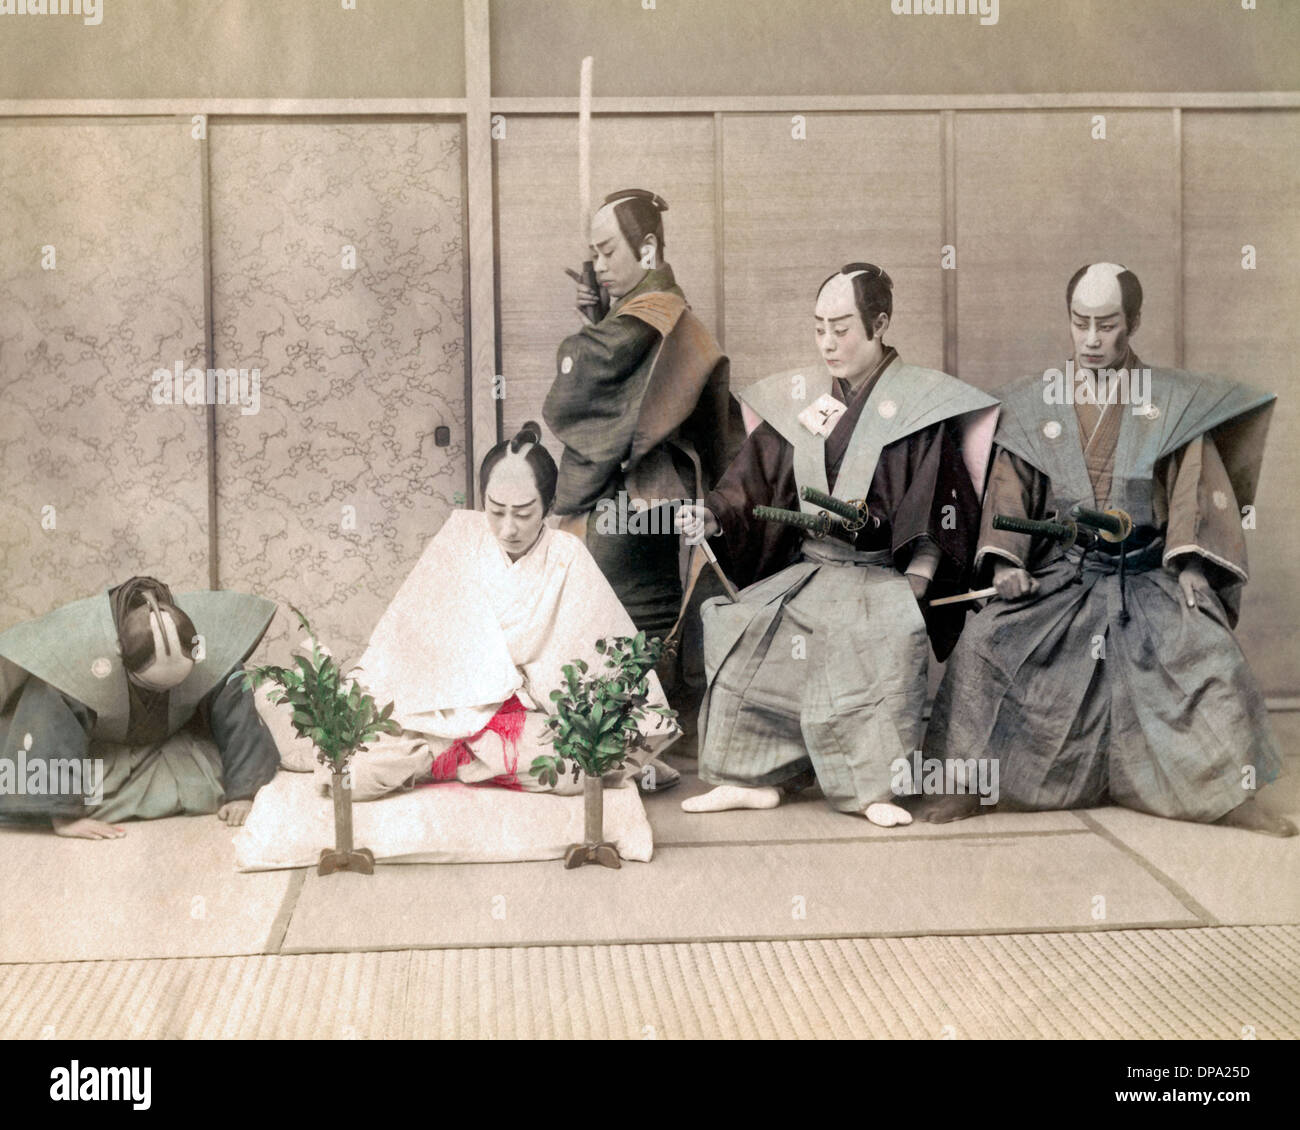 Hari-kiri,  (seppuku), staged Stock Photo